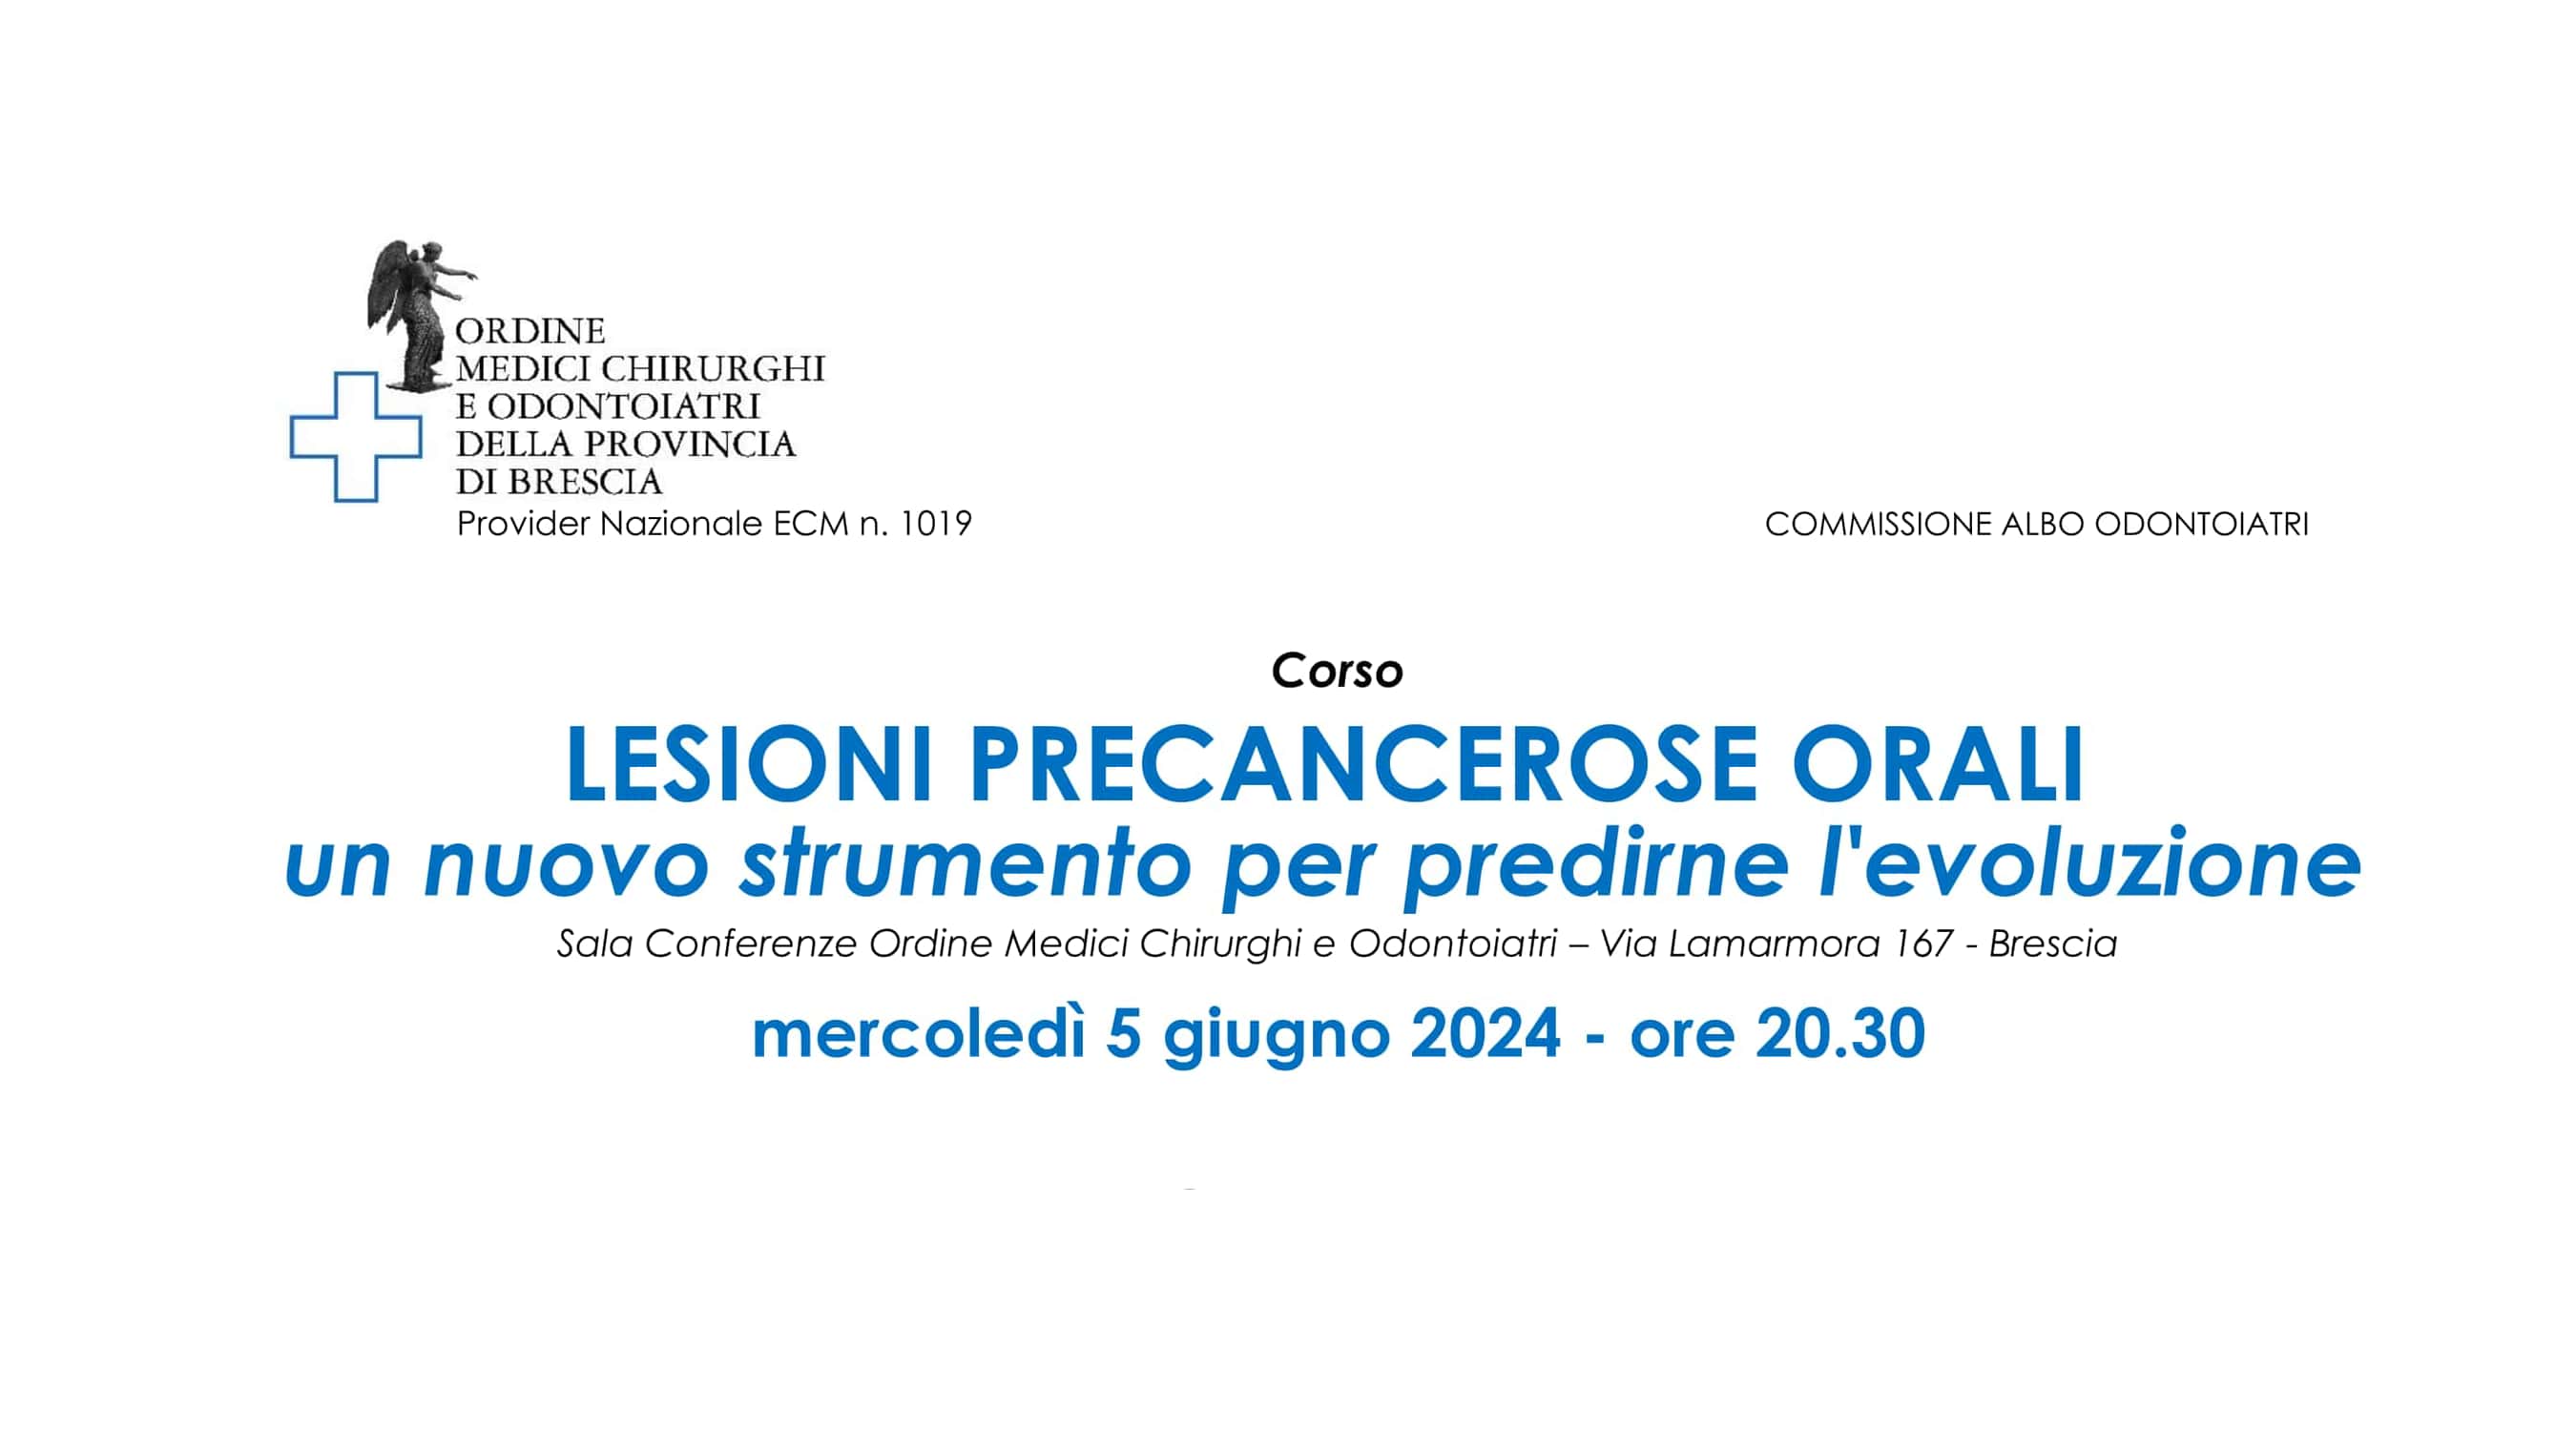 Clicca per accedere all'articolo Lesioni precancerose orali: un nuovo strumento per predirne l'evoluzione - Brescia, 5 giugno 2024